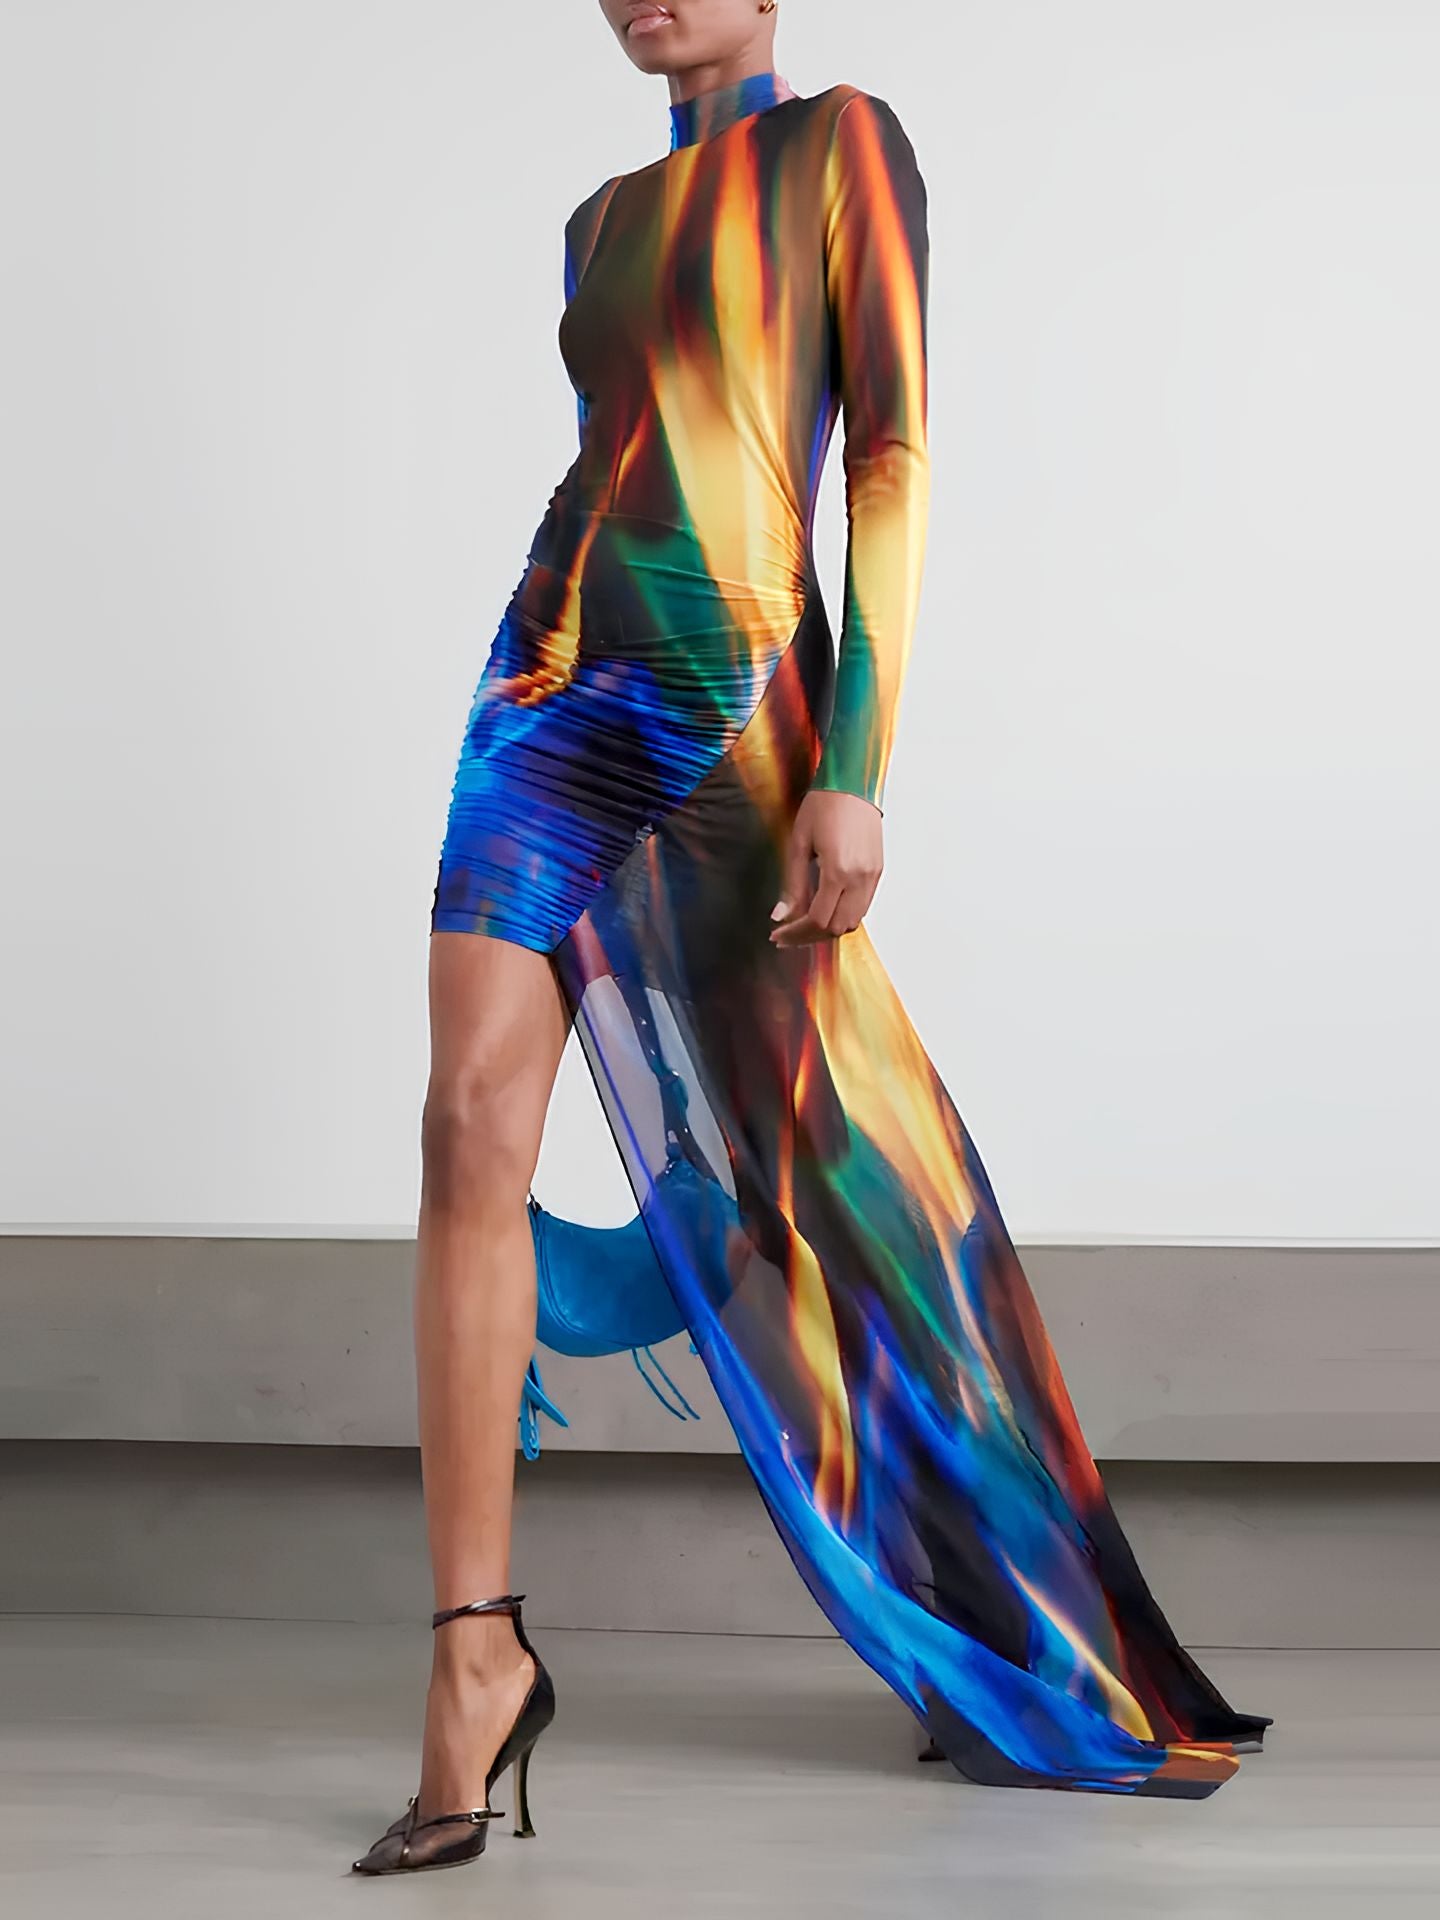 Vestito Donna Tubino Aderente Tulle Multicolore Manica Lunga Strascico Elegante - LE STYLE DE PARIS